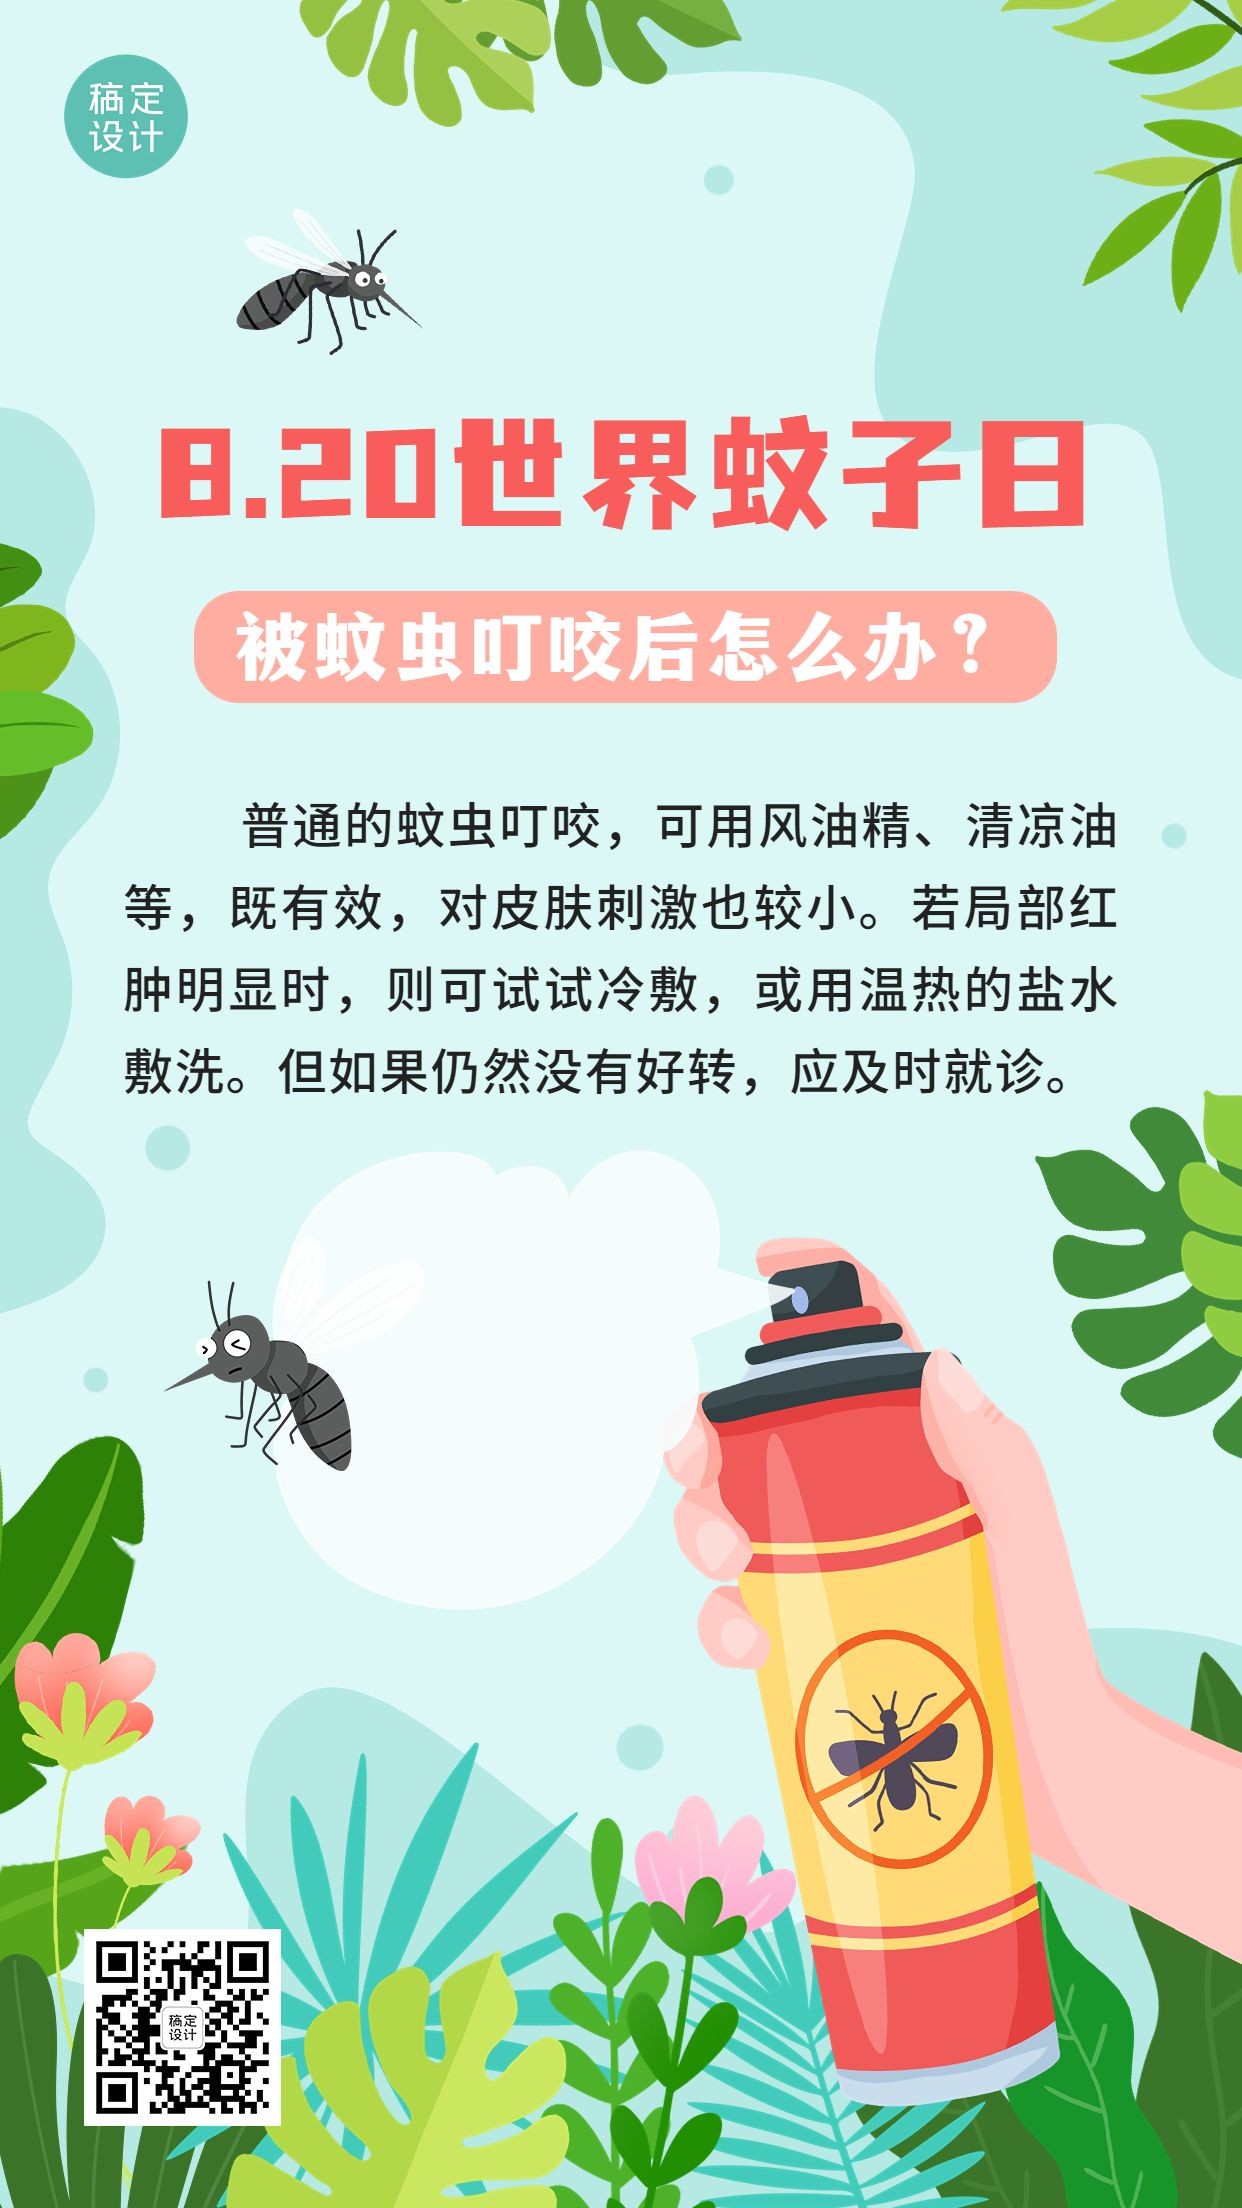 世界蚊子日节日科普手绘插画手机海报杀虫剂预览效果